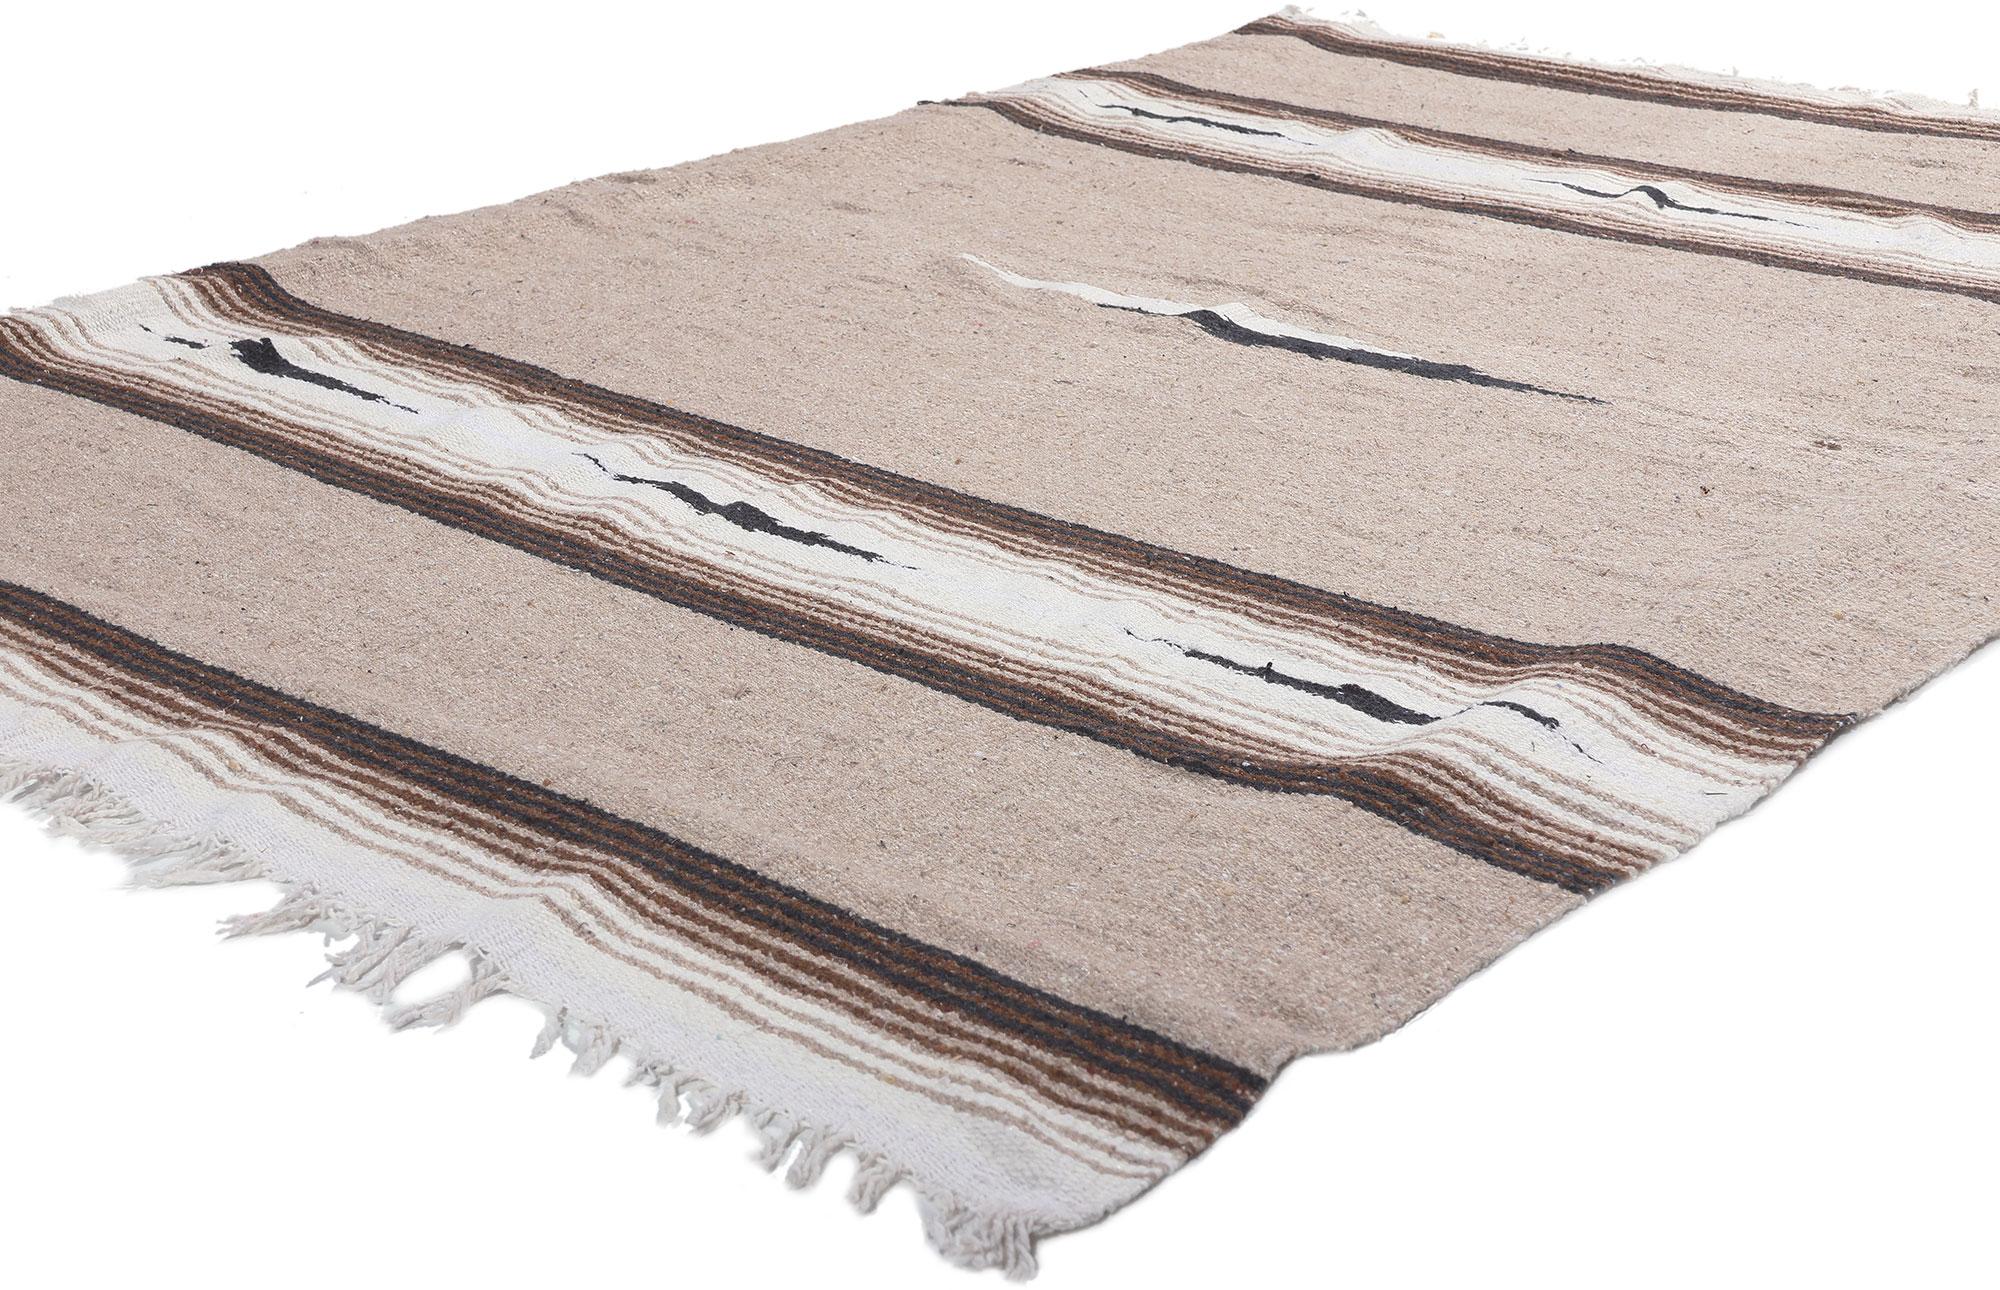 78550 Vintage Mexican Serape Blanket Kilim Rug, 04'06 x 06'08.
Émanant du style du Sud-Ouest et d'une sensibilité rustique, ce tapis mexicain Serapi kilim tissé à la main est une vision captivante de la beauté tissée. Le design géométrique